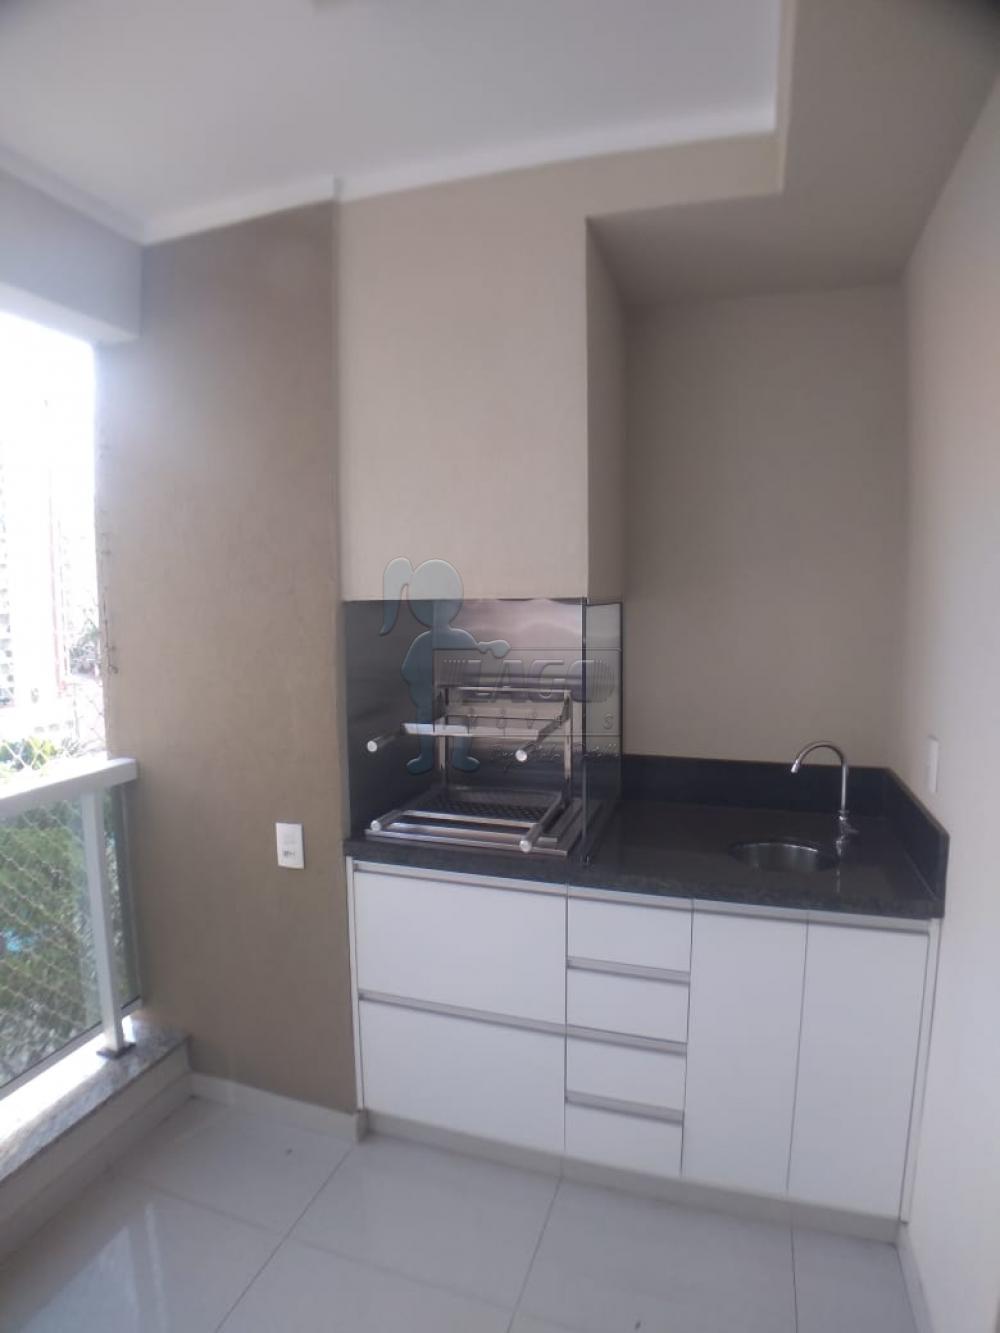 Alugar Apartamentos / Padrão em Ribeirão Preto R$ 3.500,00 - Foto 2